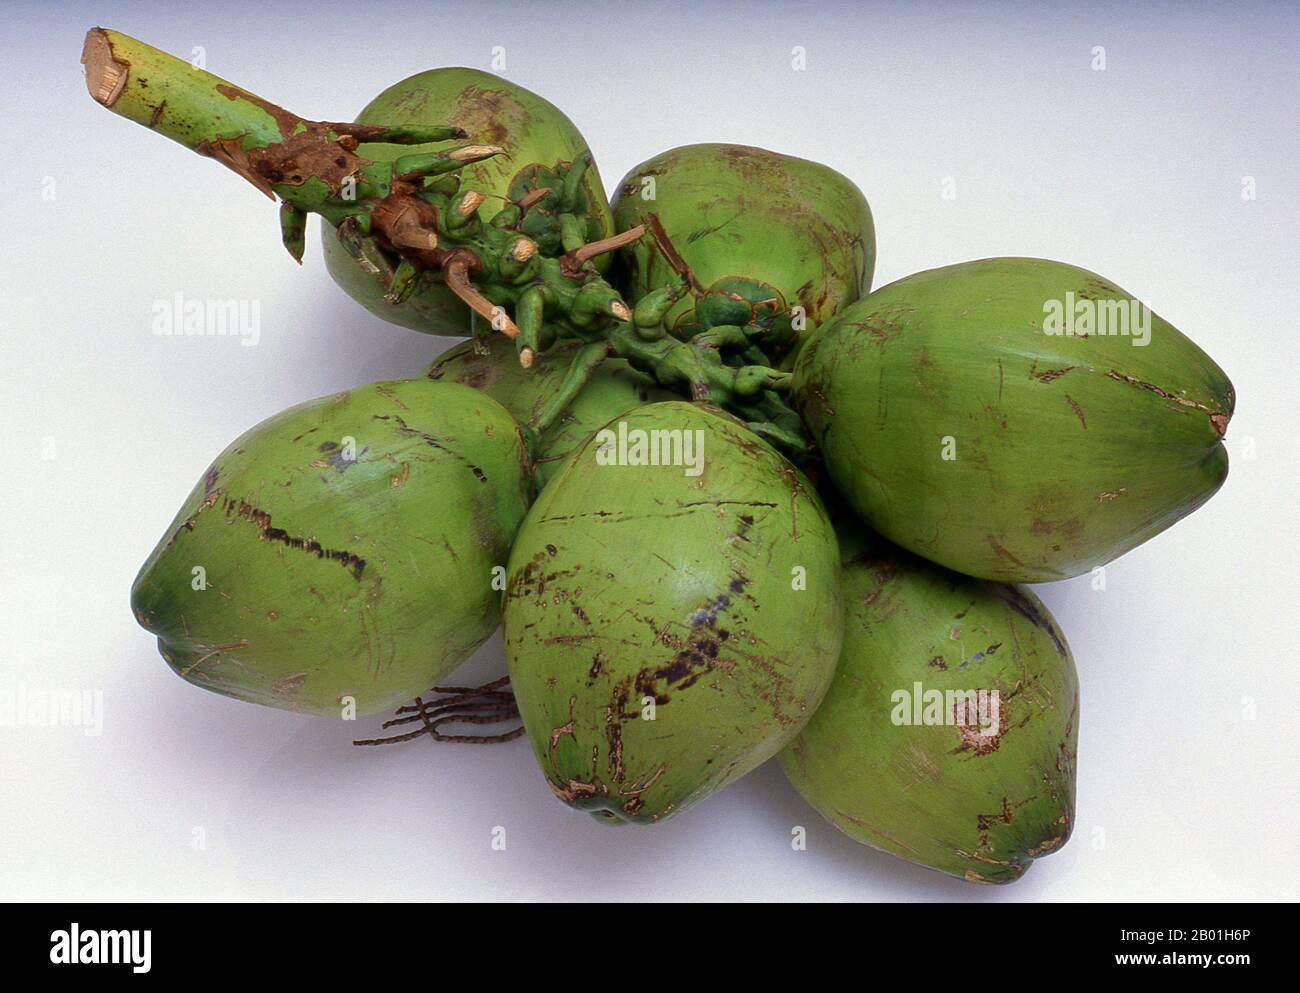 Thailand: Gereifte Kokosnüsse, Küste der Andamanensee. Die Kokospalme, auch Cocos nucifera genannt, wird nicht nur wegen ihrer Schönheit, sondern auch als lukrative Ernte geschätzt. Es wird in der gesamten Südsee und im Indischen Ozean angebaut und bietet Essen, Getränke, Unterkünfte, Transport, Treibstoff, Medizin und sogar Kleidung für Millionen von Menschen. Die Kokospalme lebt etwa 60 Jahre und produziert jährlich rund 70-80 Nüsse. Die Bäume sind manchmal 40-50 Meter (130-160 Fuß) hoch. Stockfoto